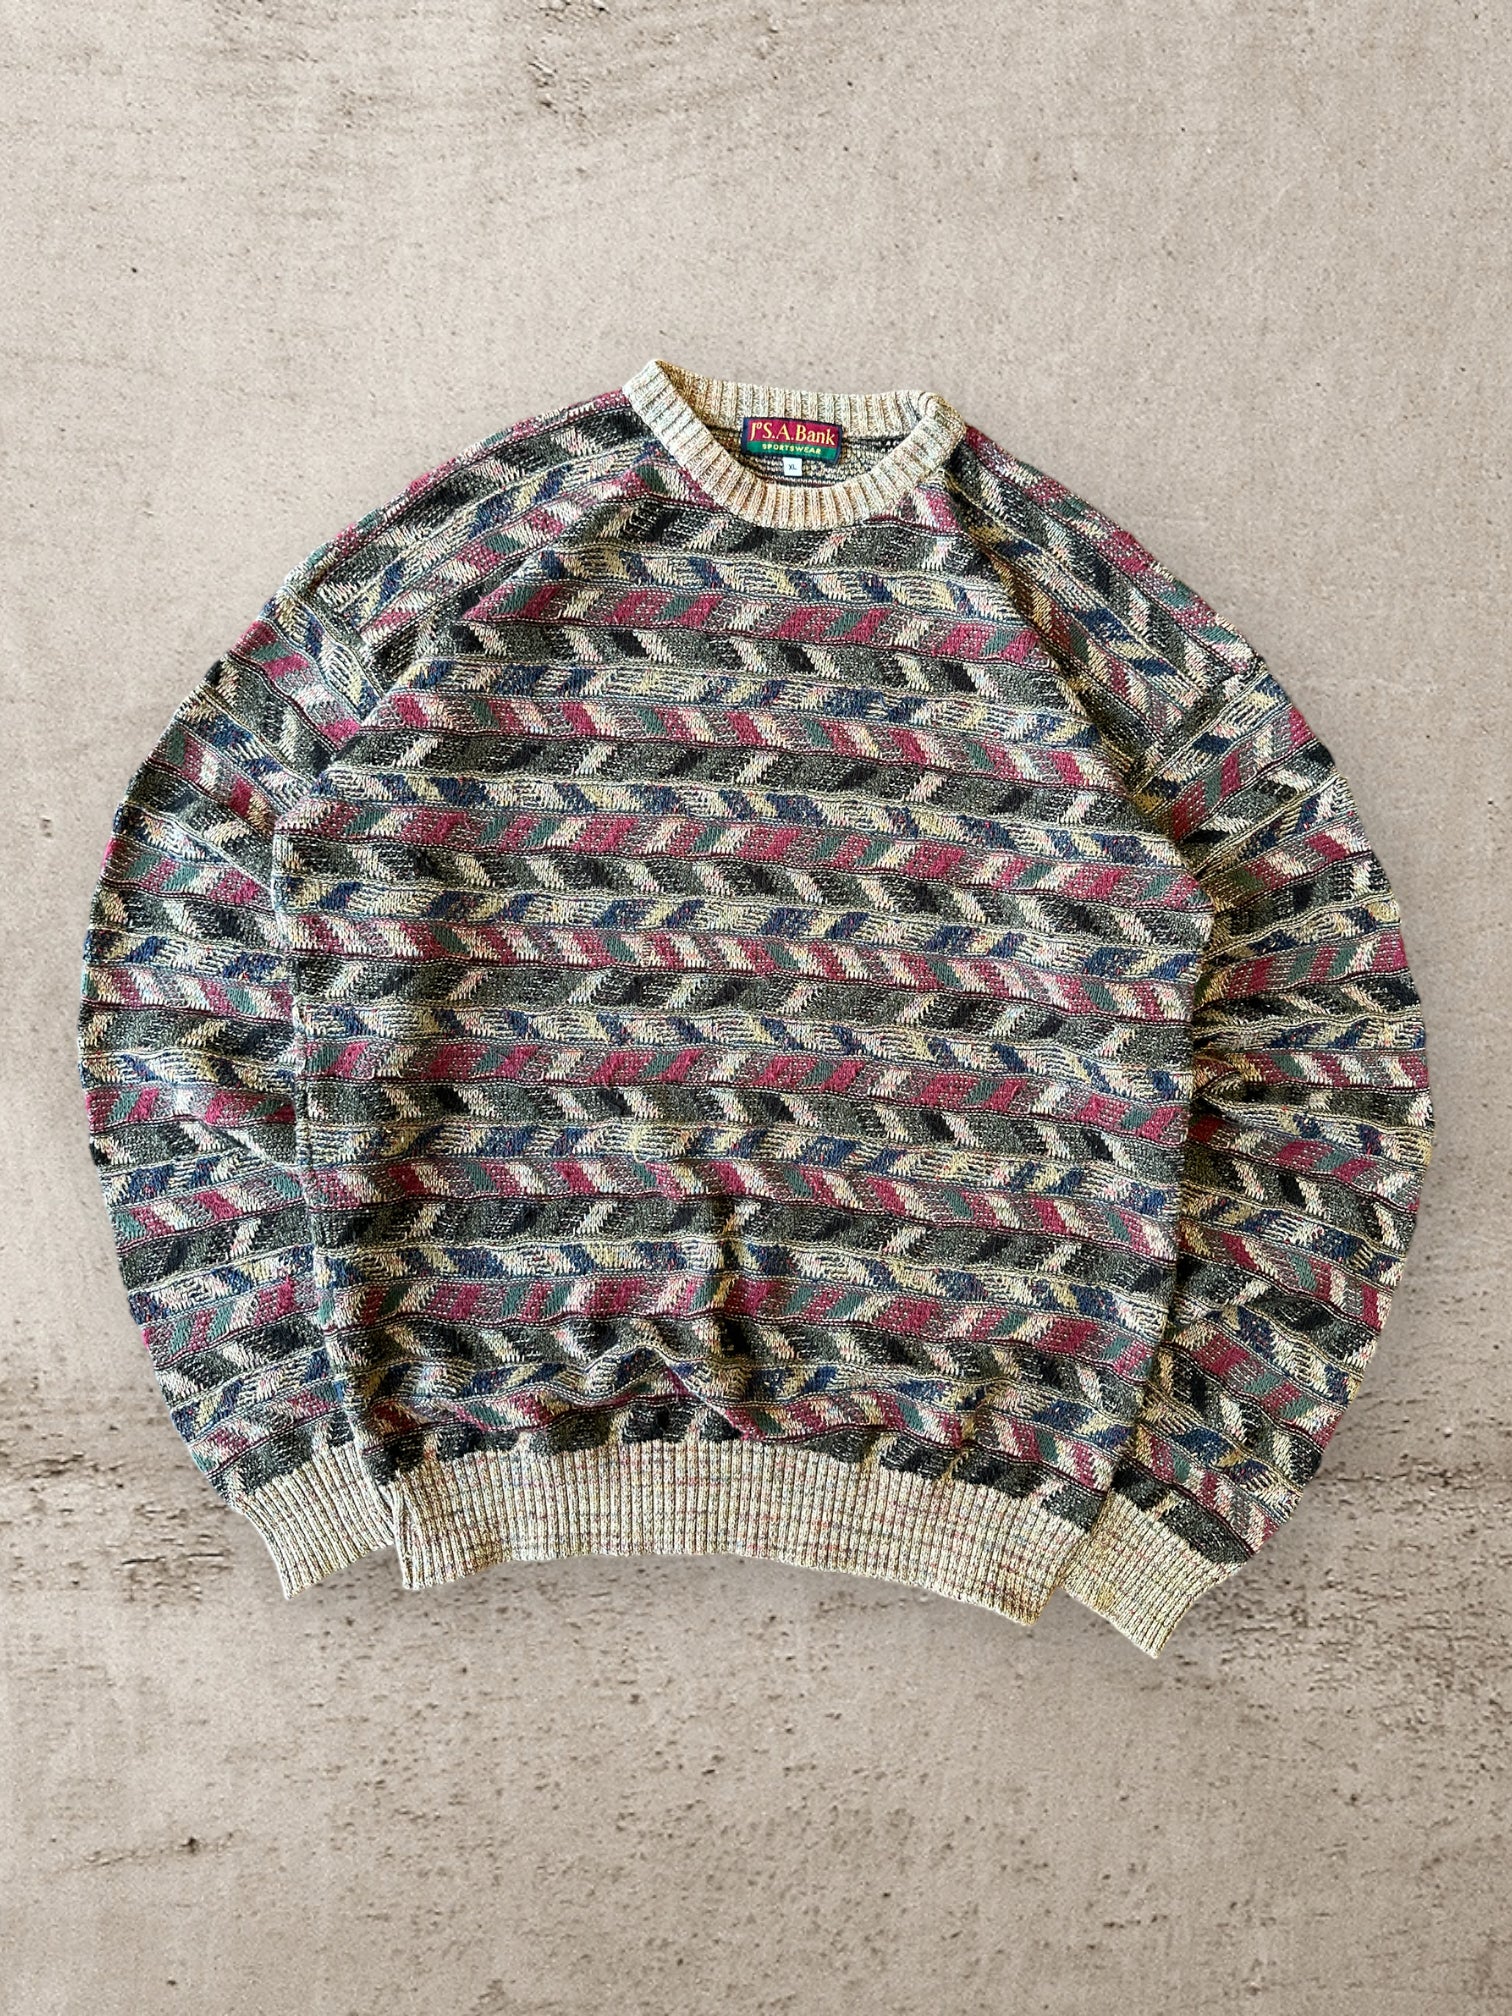 90s JSA Sportswear Multicolor Pattered Knit Sweater - Large